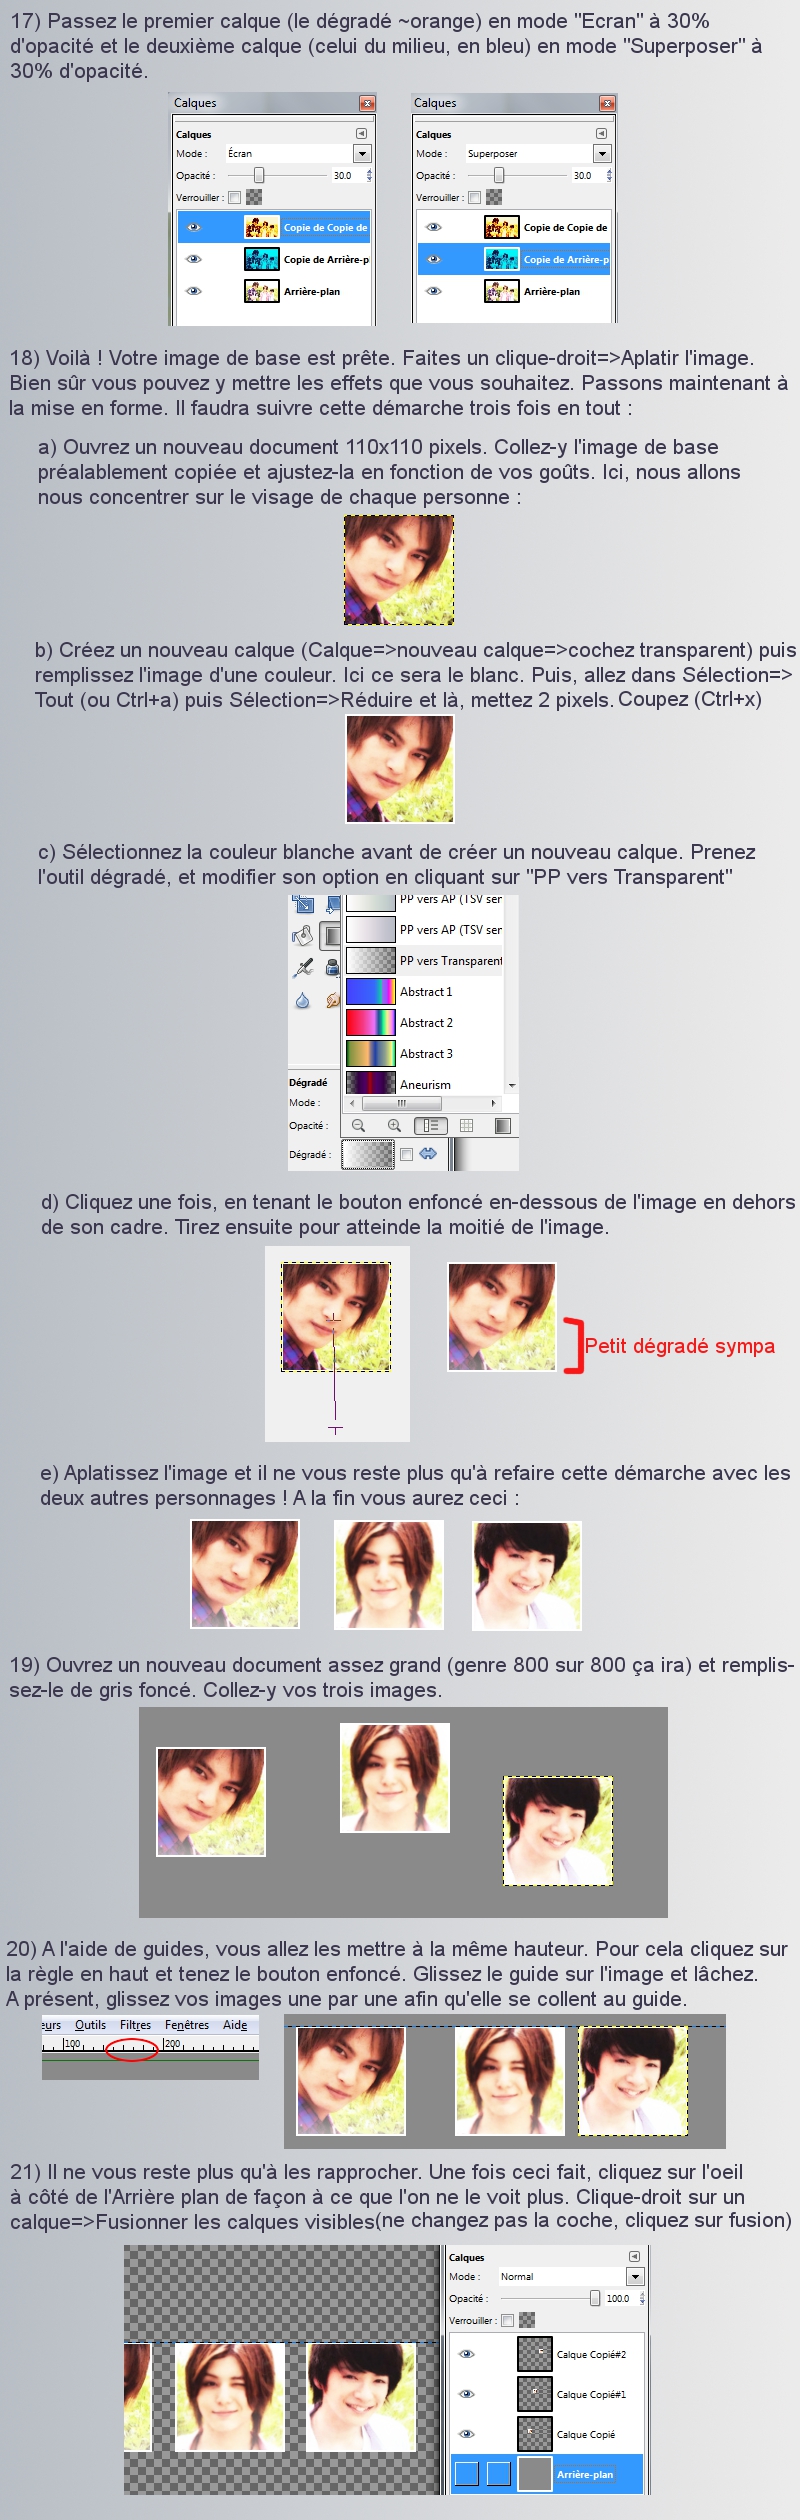 [GIMP] Avatar et signature "à troi photos" / "Shinku" 13020312155914433810825780